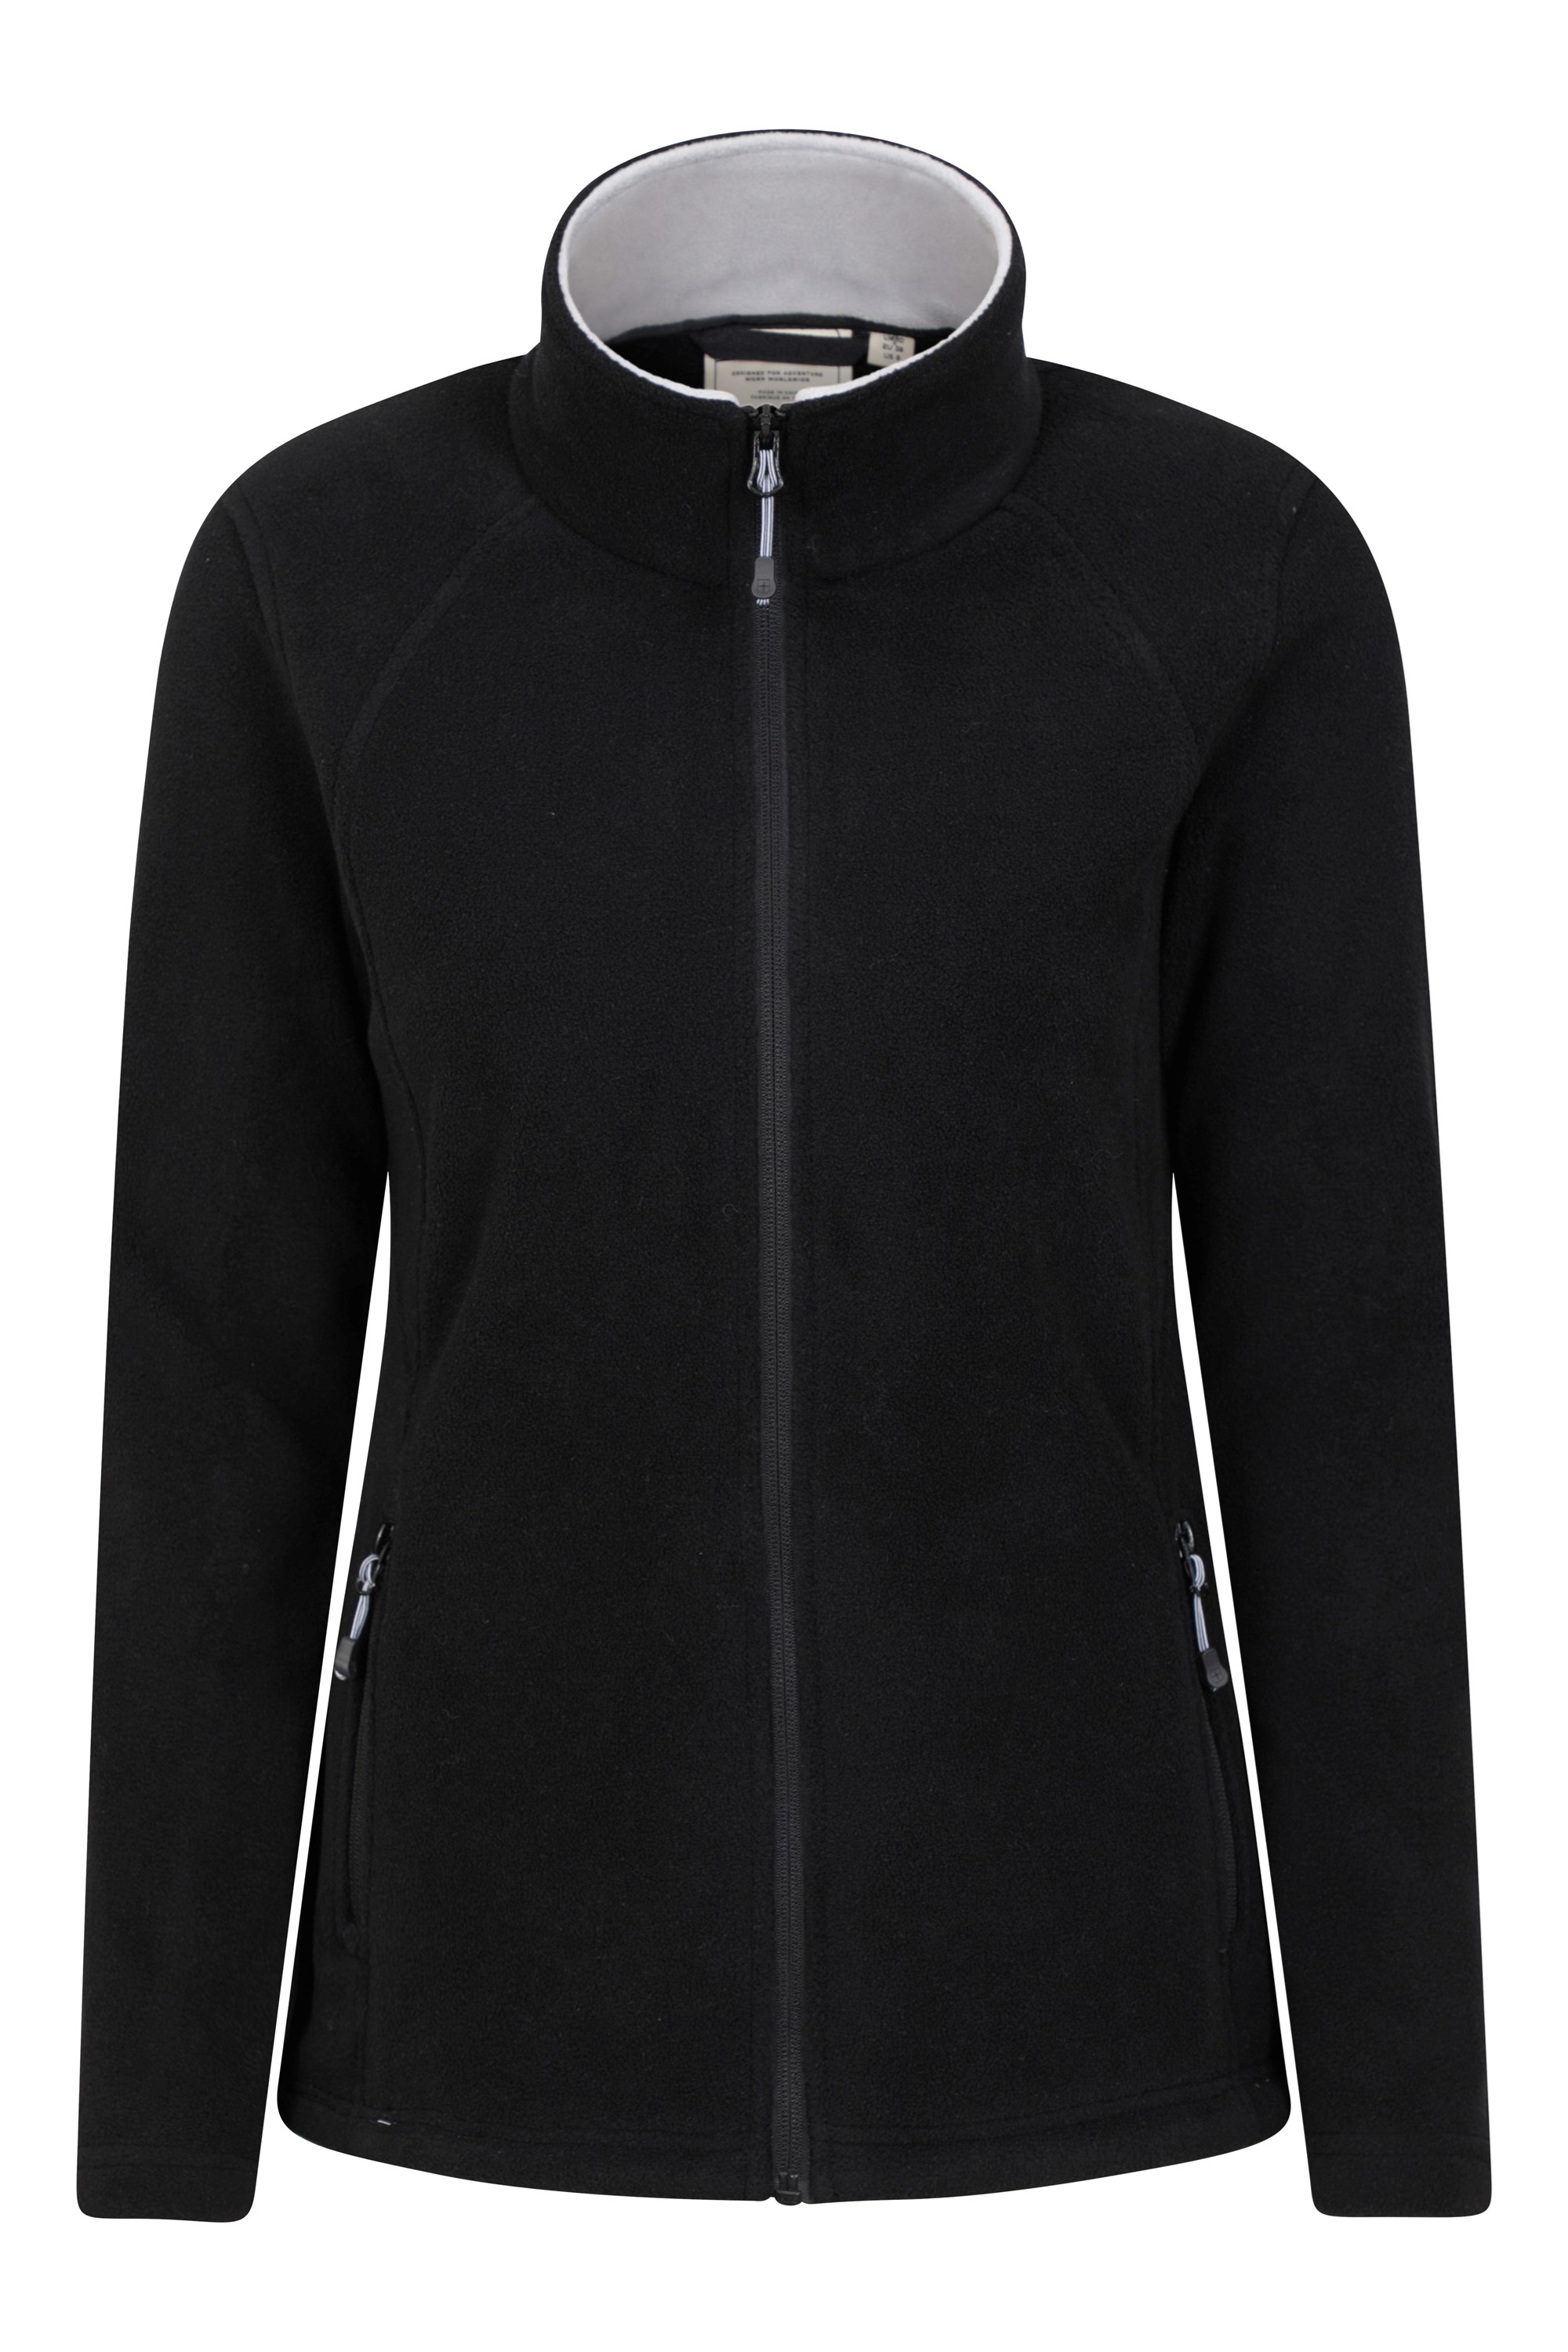 Sky Womens Full-zip Fleece Jacket - Black